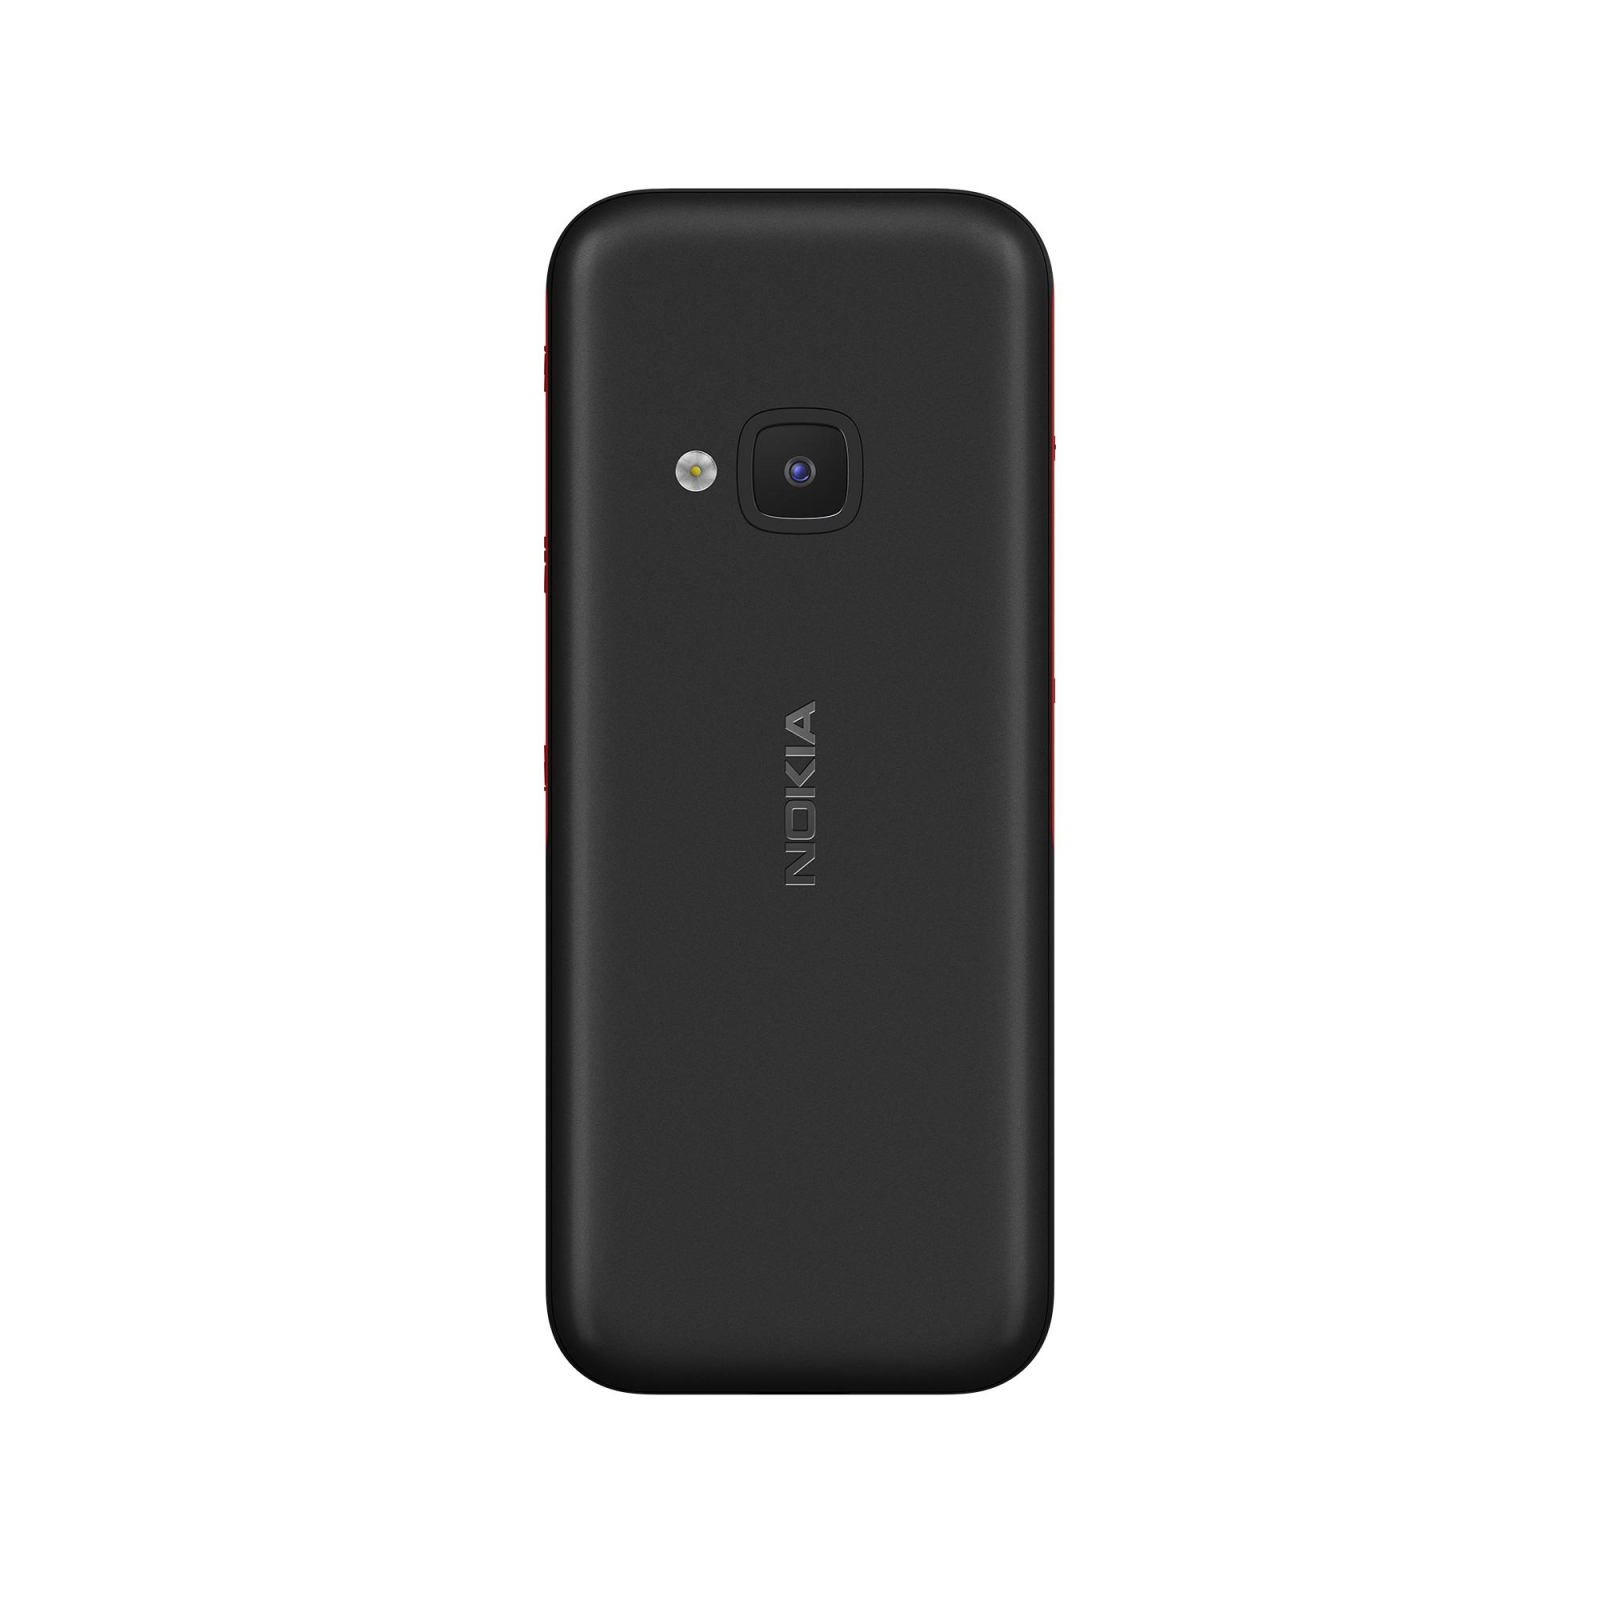 Мобильный телефон Nokia 5310 DS White-Red изображение 4